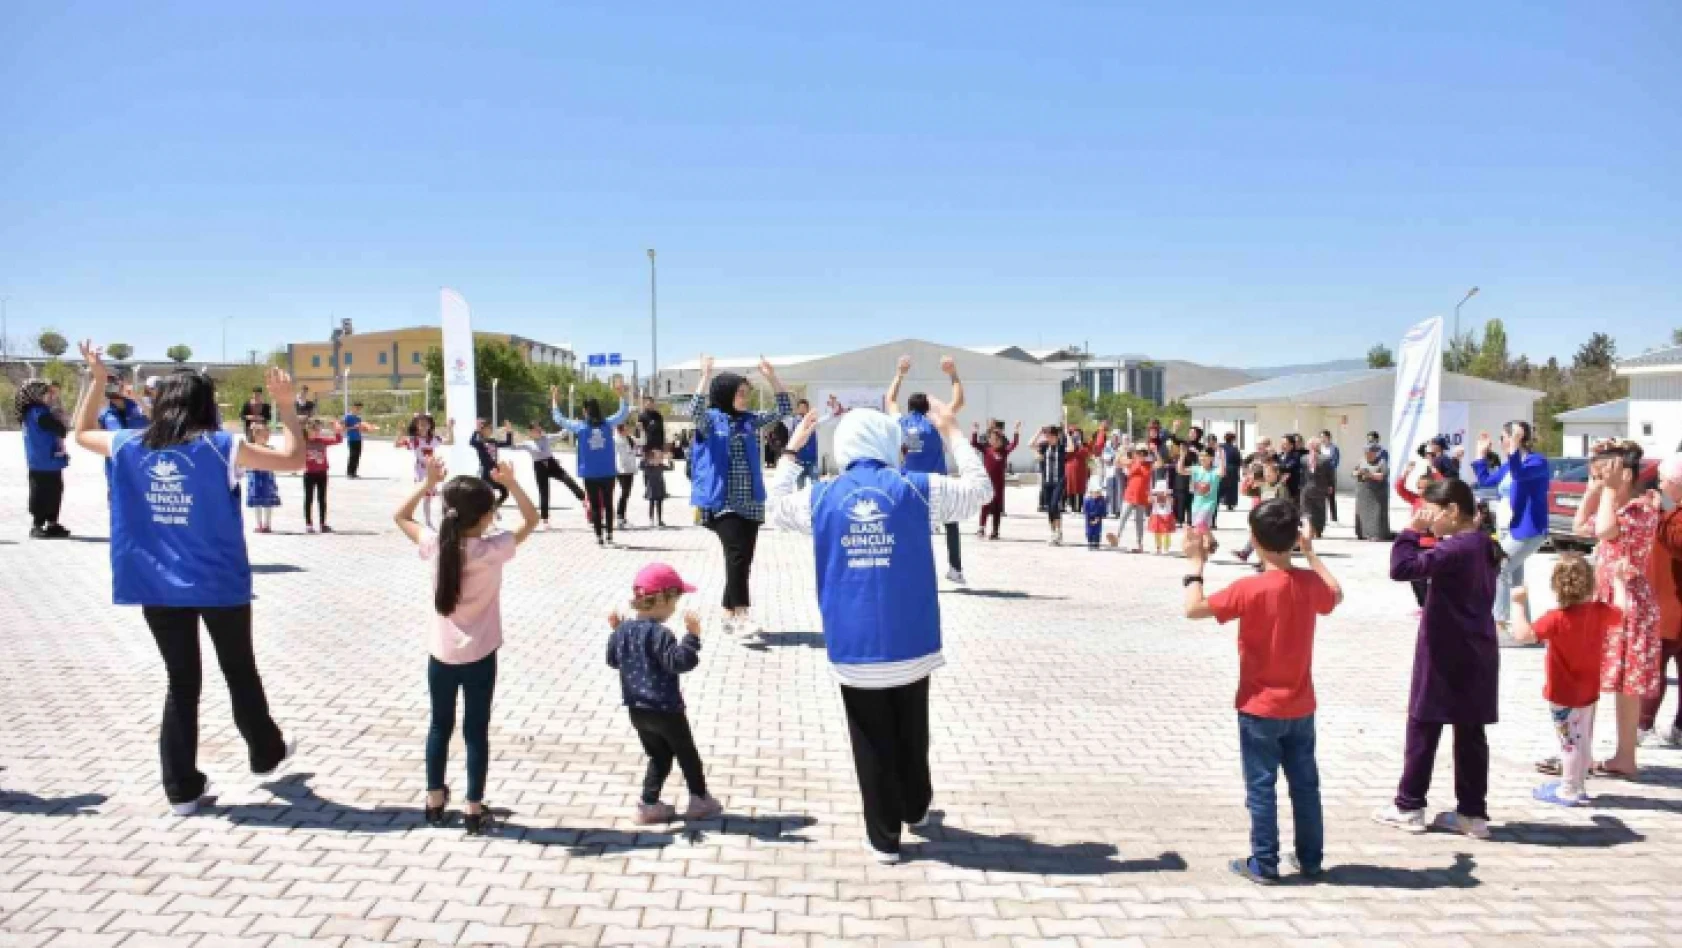 Elazığ Gençlik Merkezi, Ahıska Türklerini yalnız bırakmadı